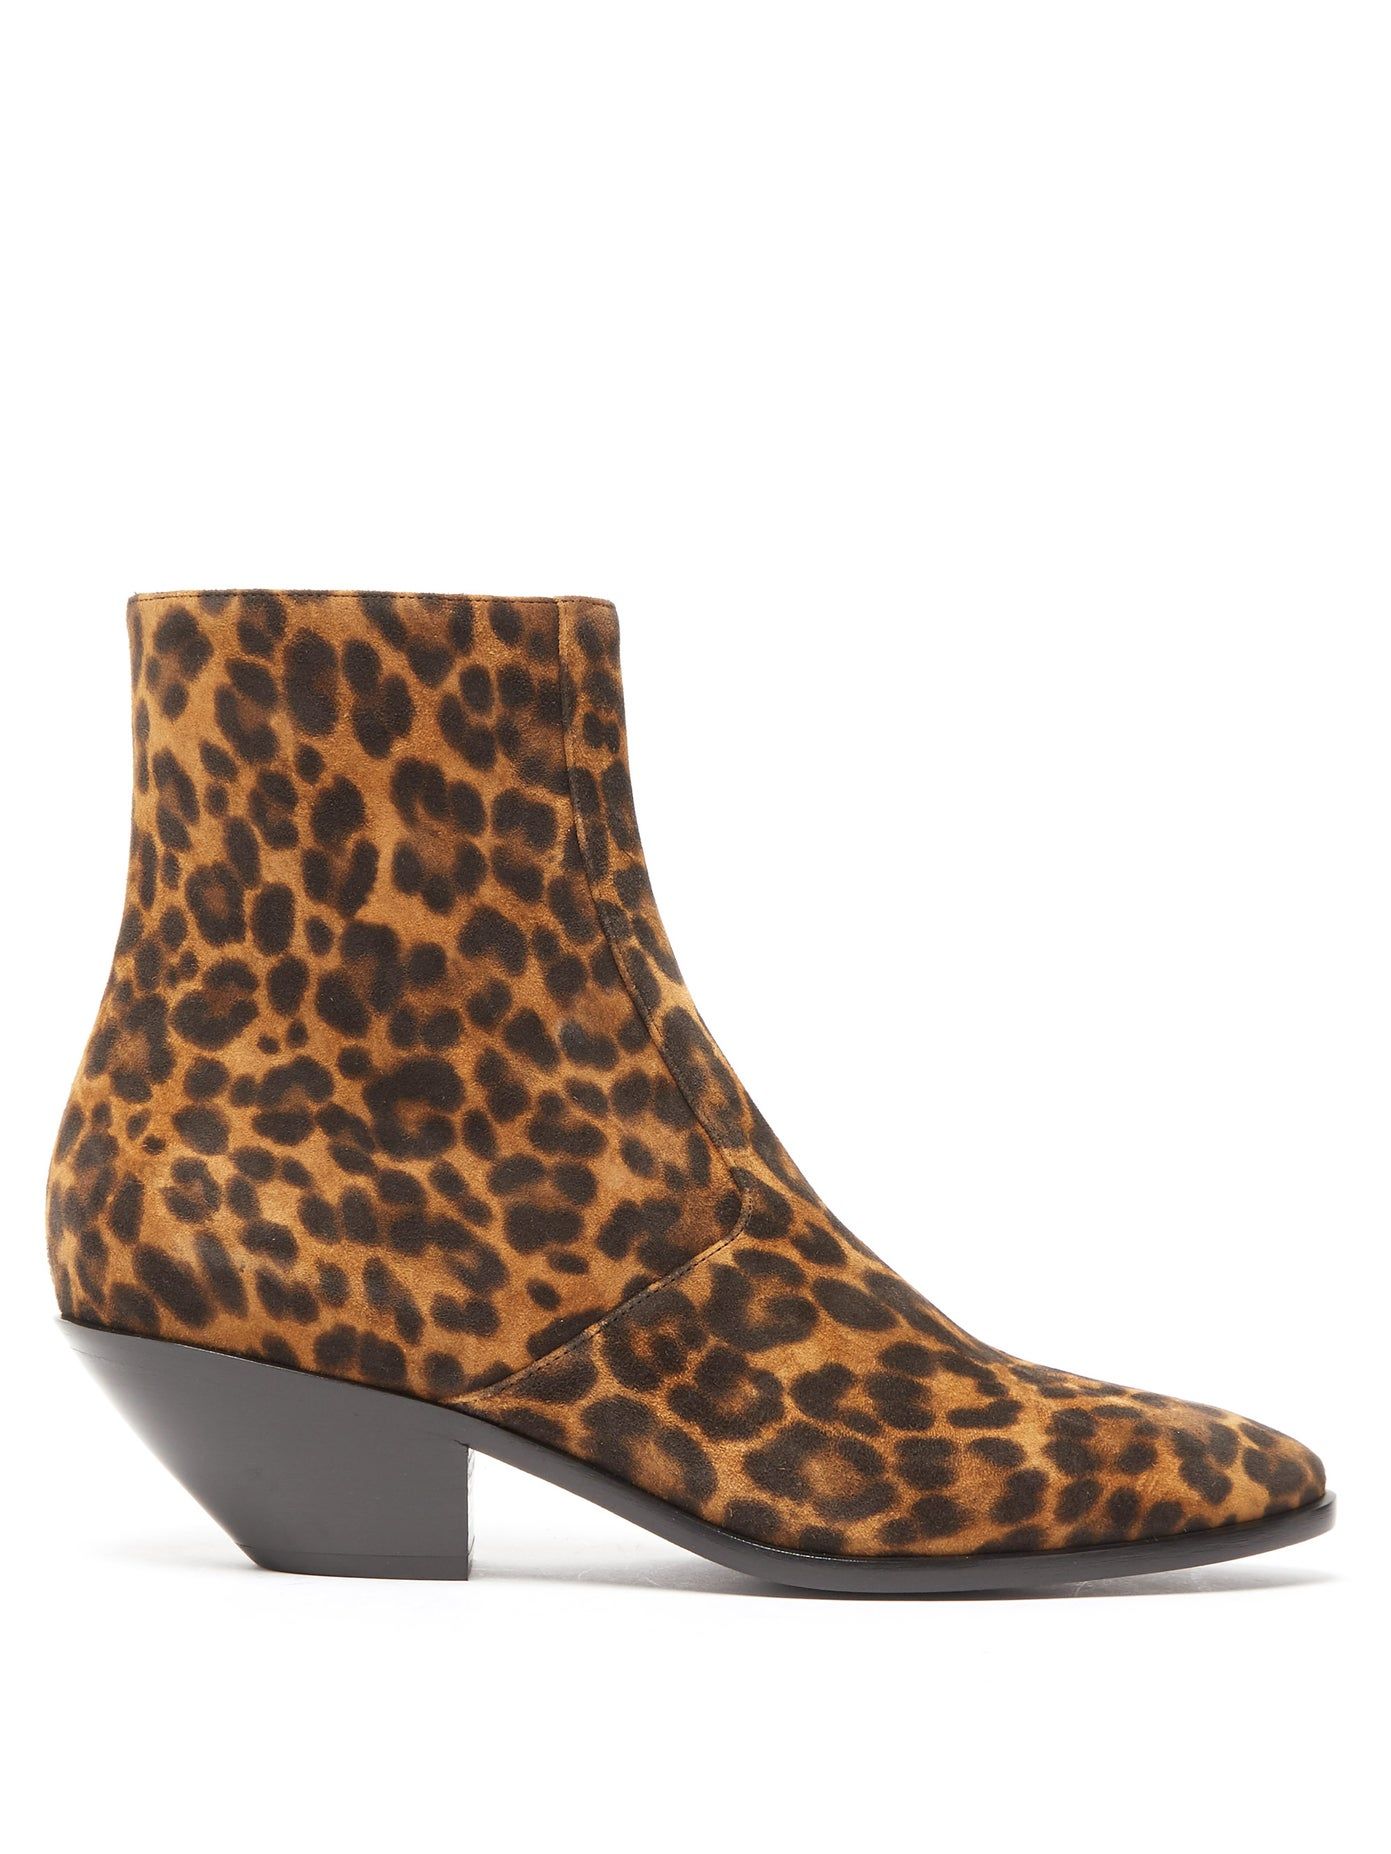 next leopard shoes